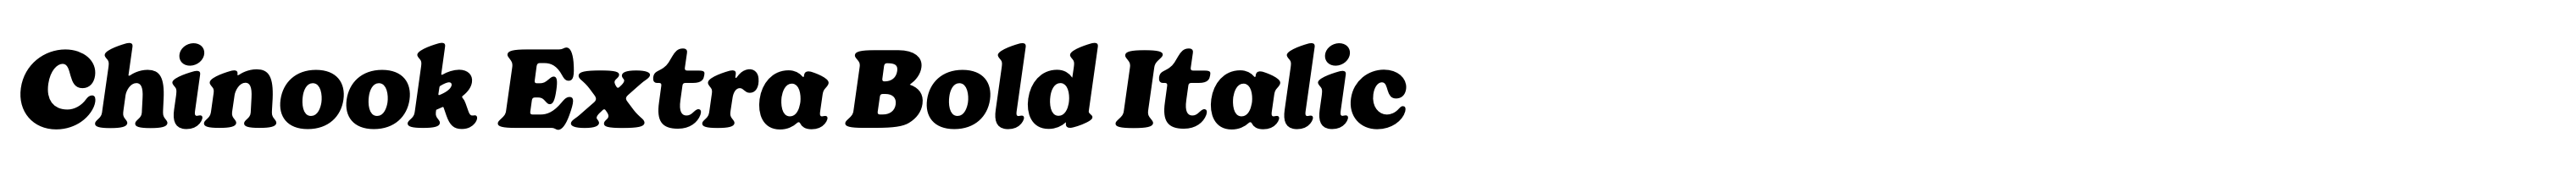 Chinook Extra Bold Italic